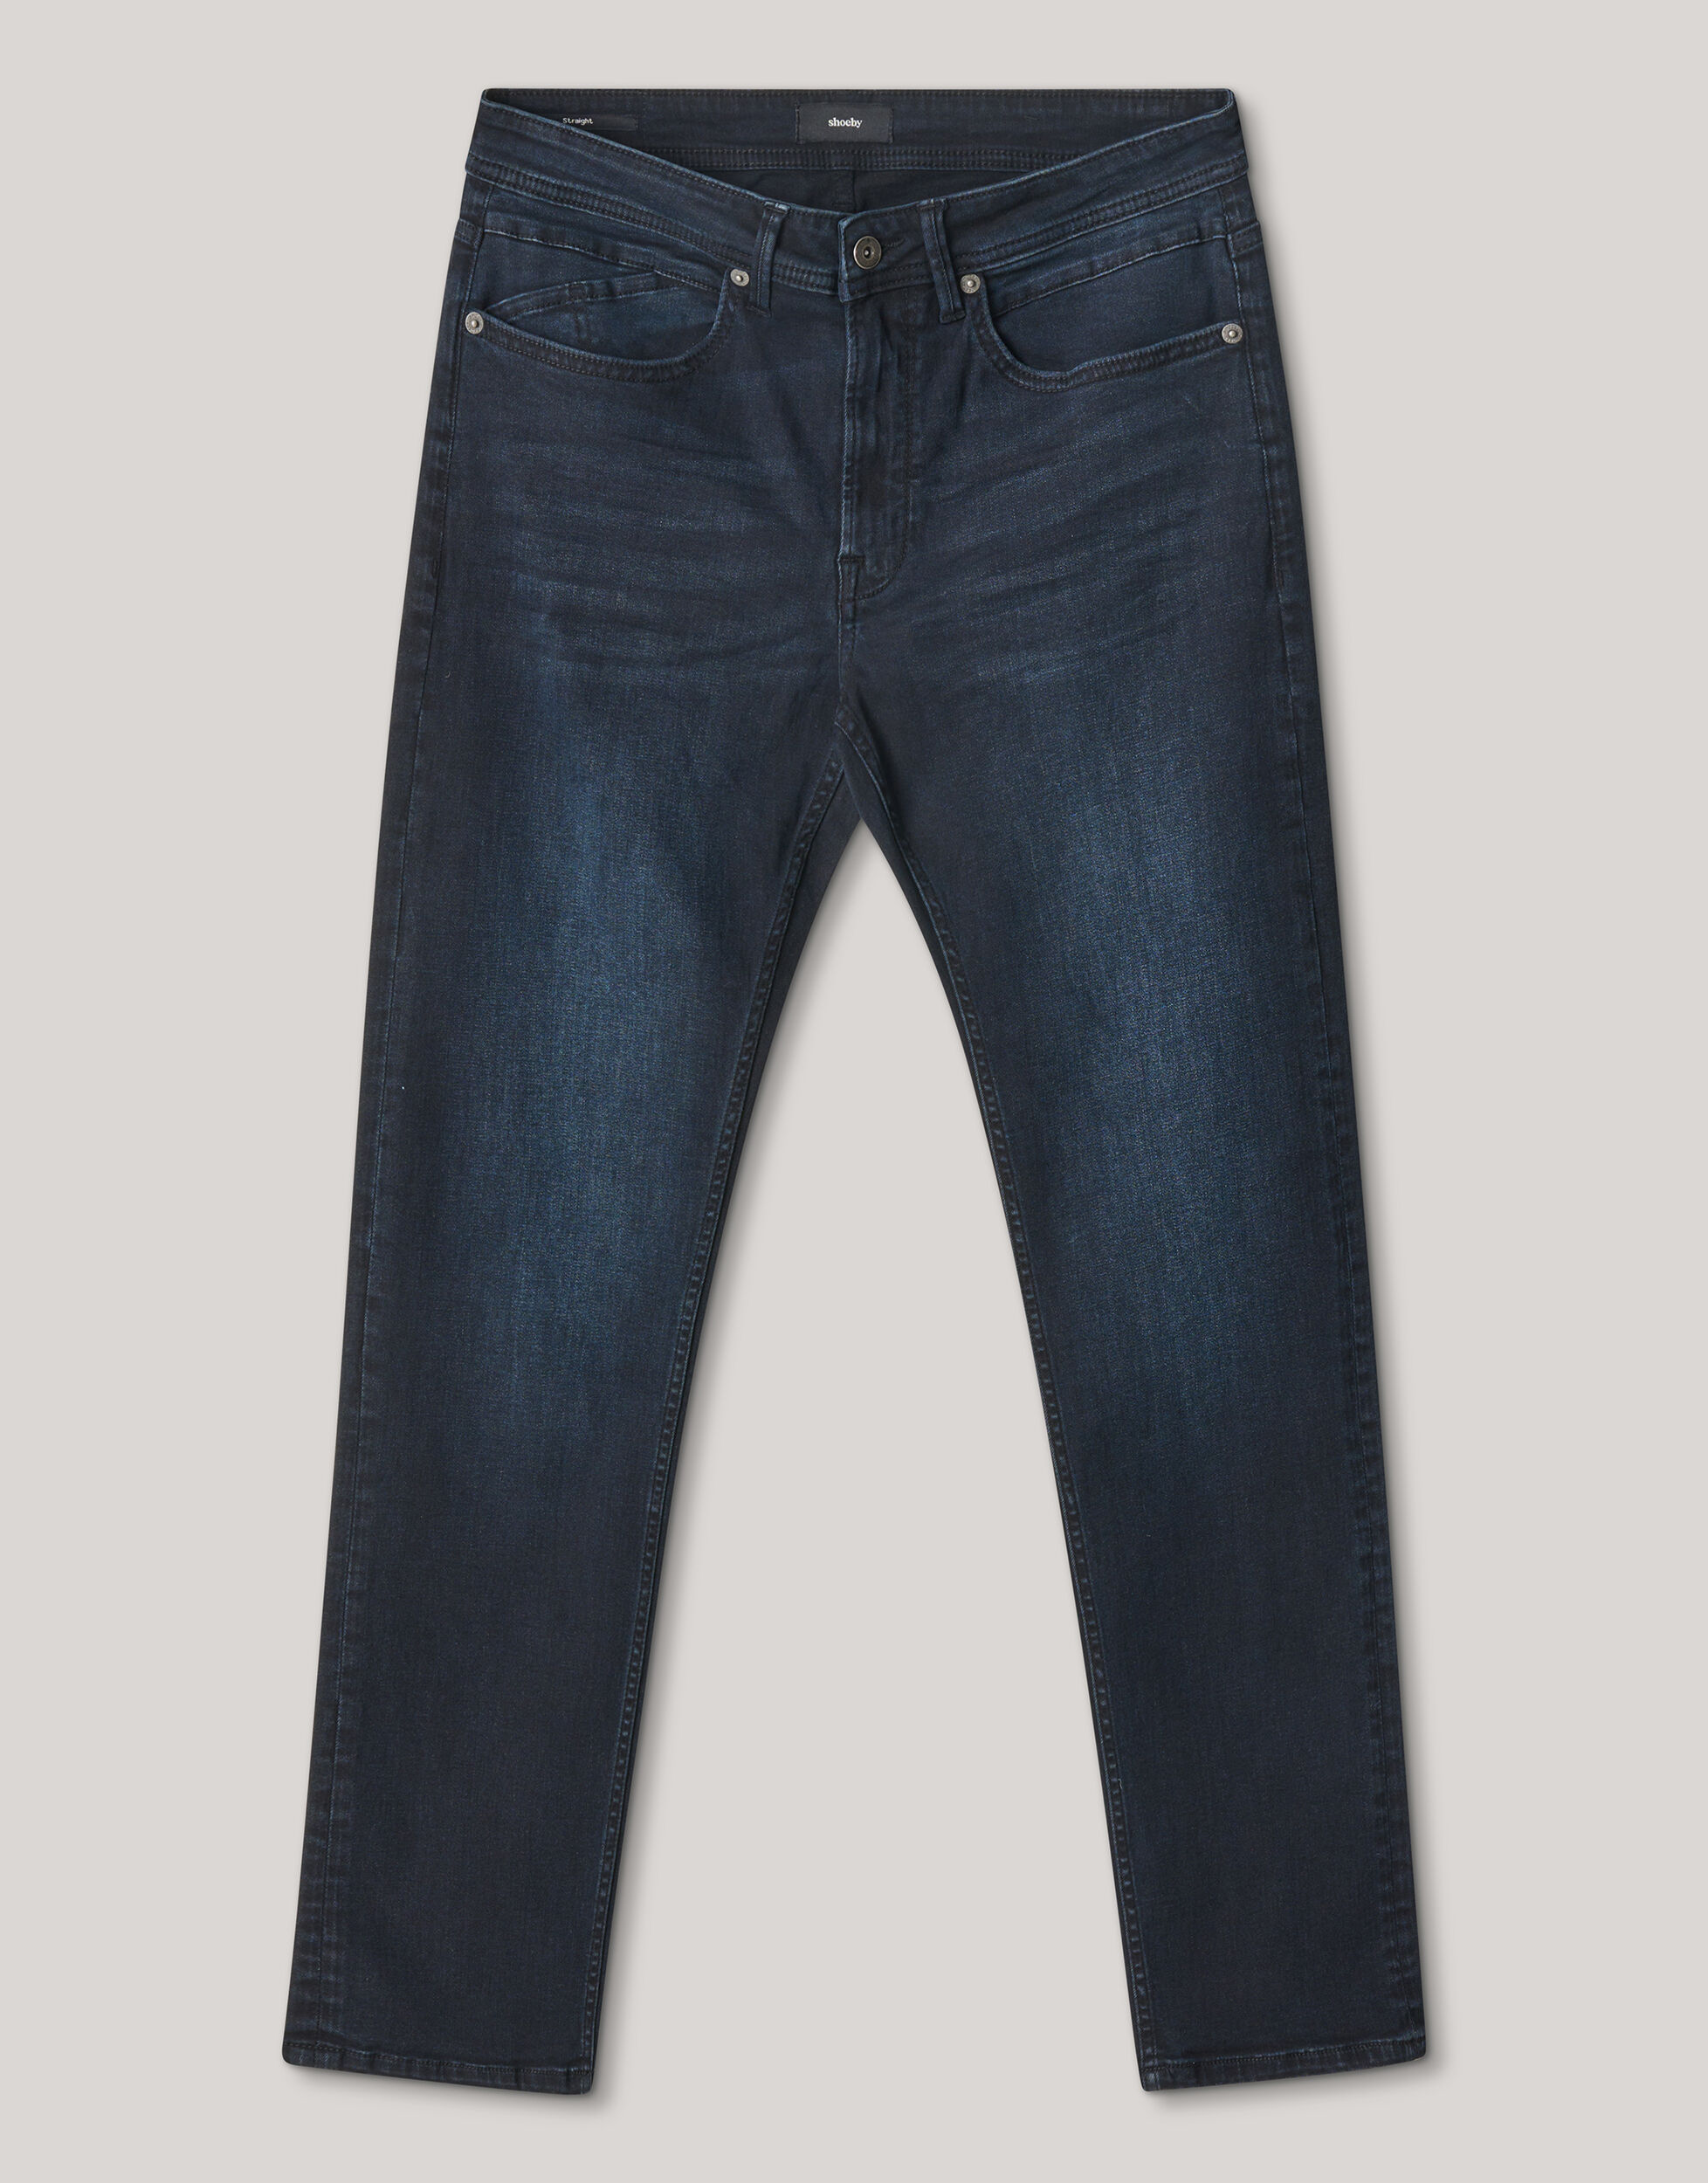 Straight Fit Jeans Blauw/Zwart L32 Refill